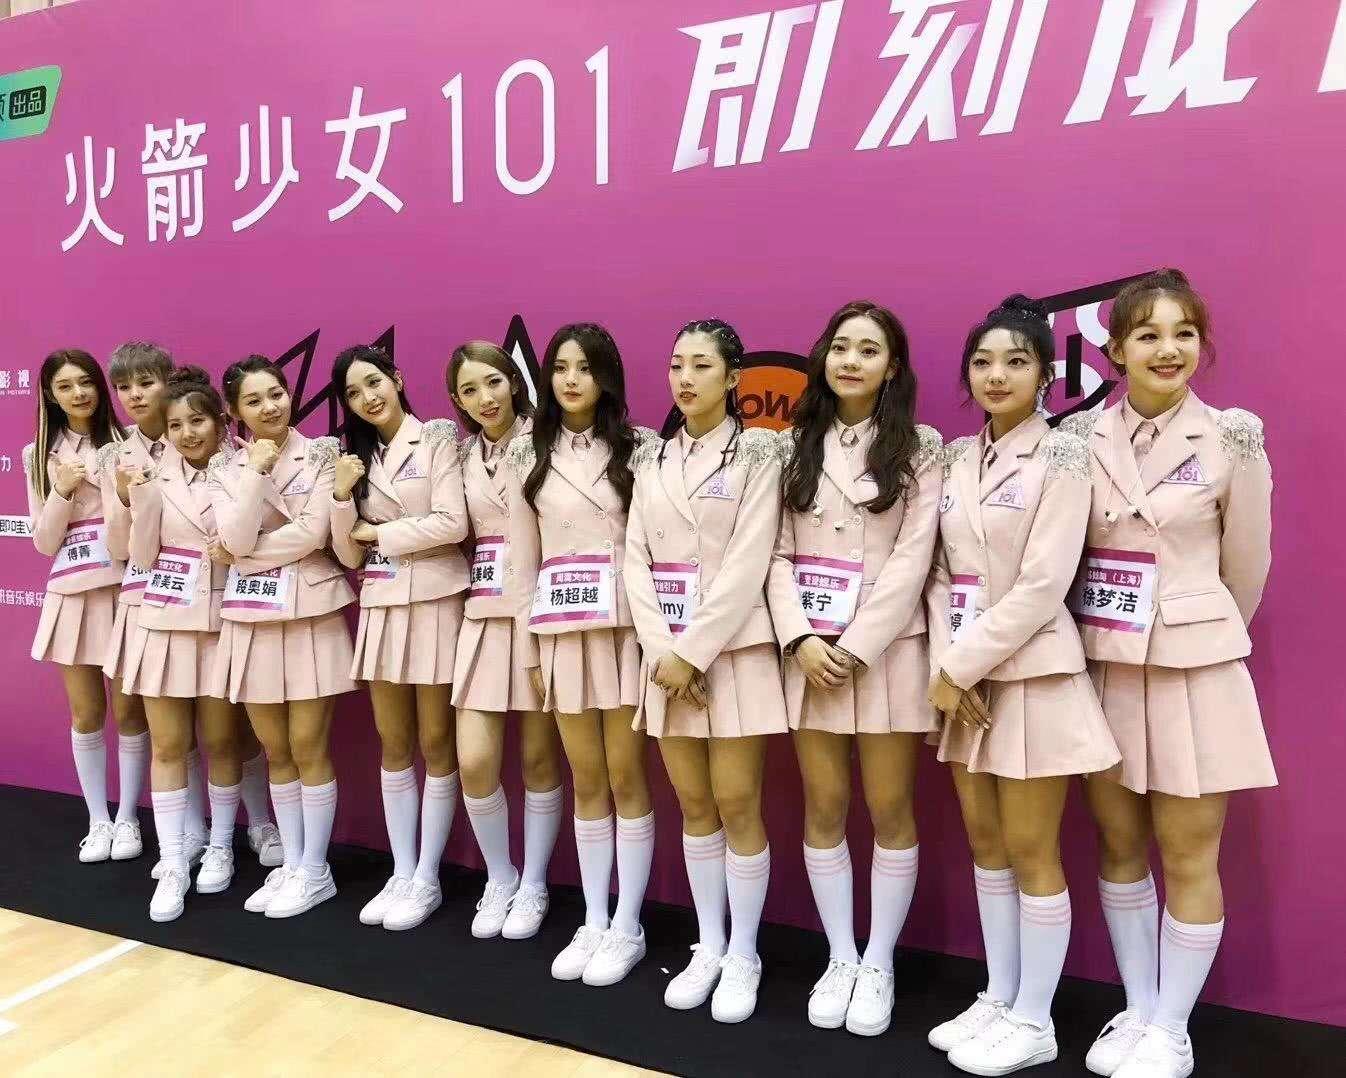 最终,孟美岐,吴宣仪等11名小姐姐组成的"火箭少女101"女团,也宣布正式